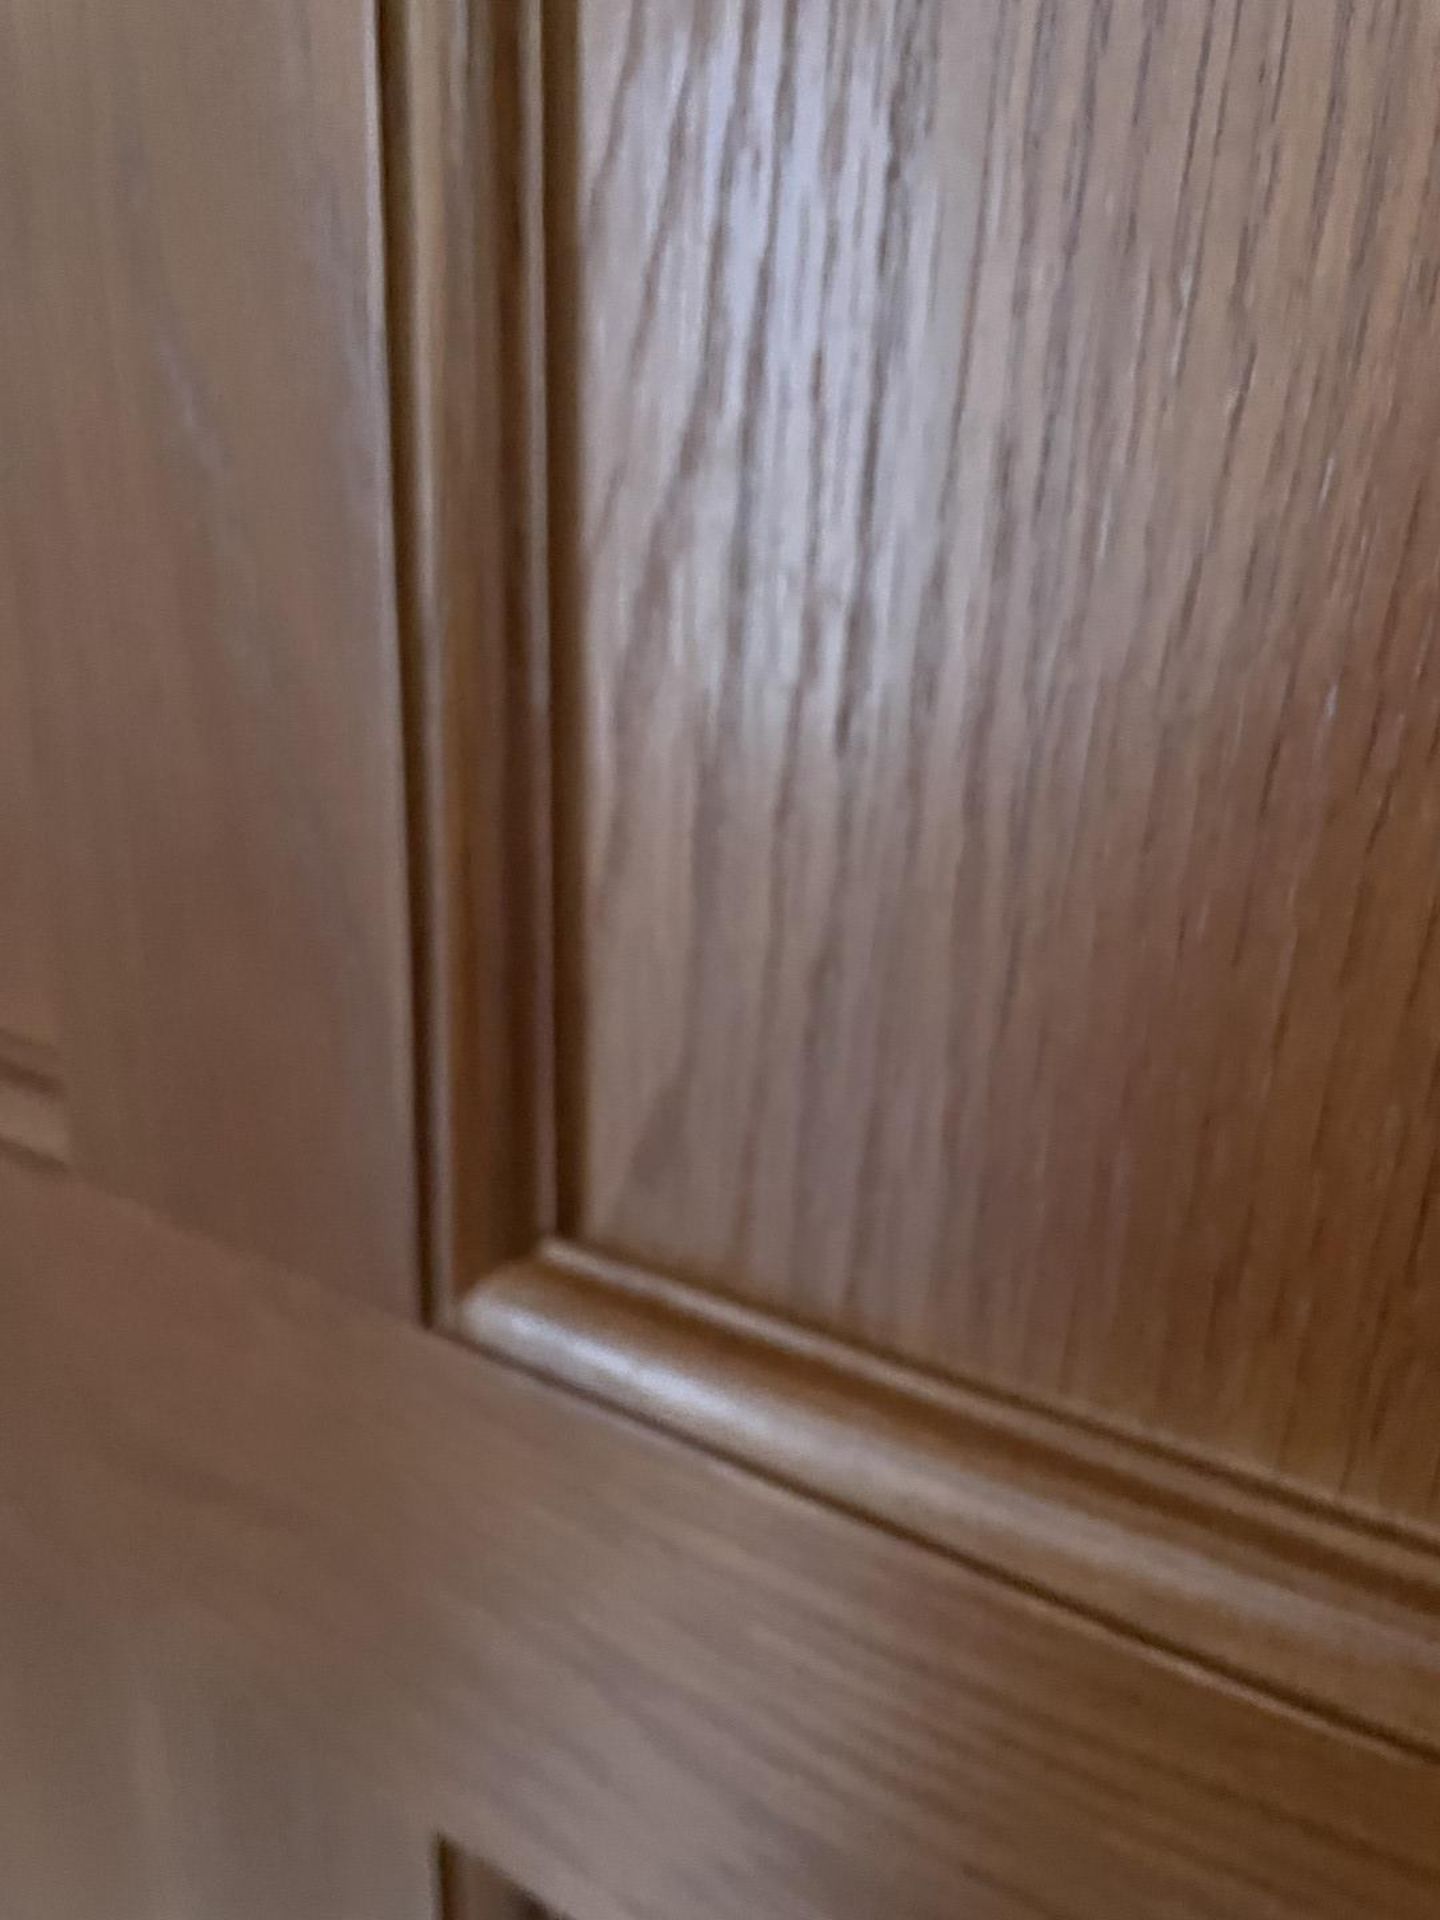 1 x Solid Oak Wooden Lockable Internal Door - Includes Handles and Hinges - Ref: PAN286 / - Image 7 of 17